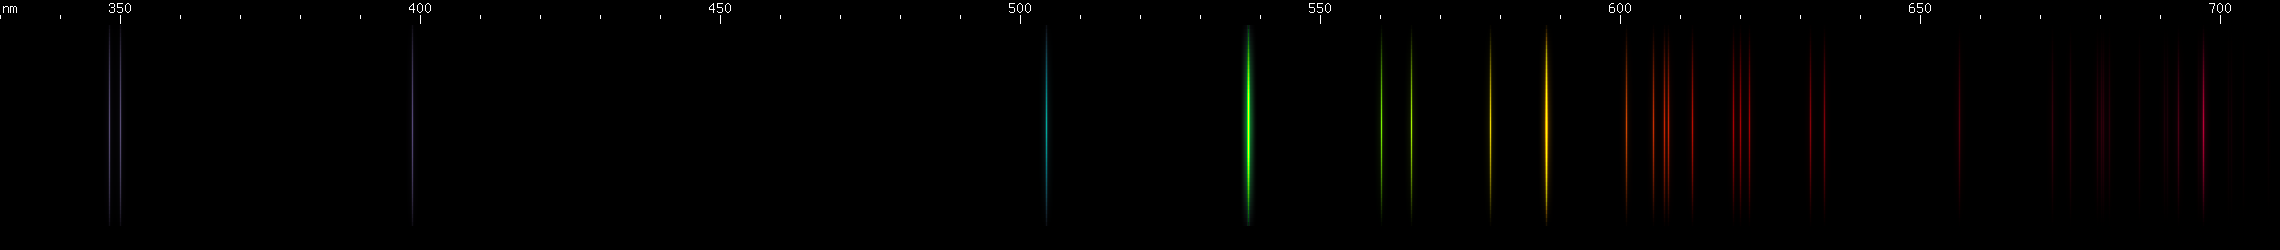 Spectral lines of Neptunium.